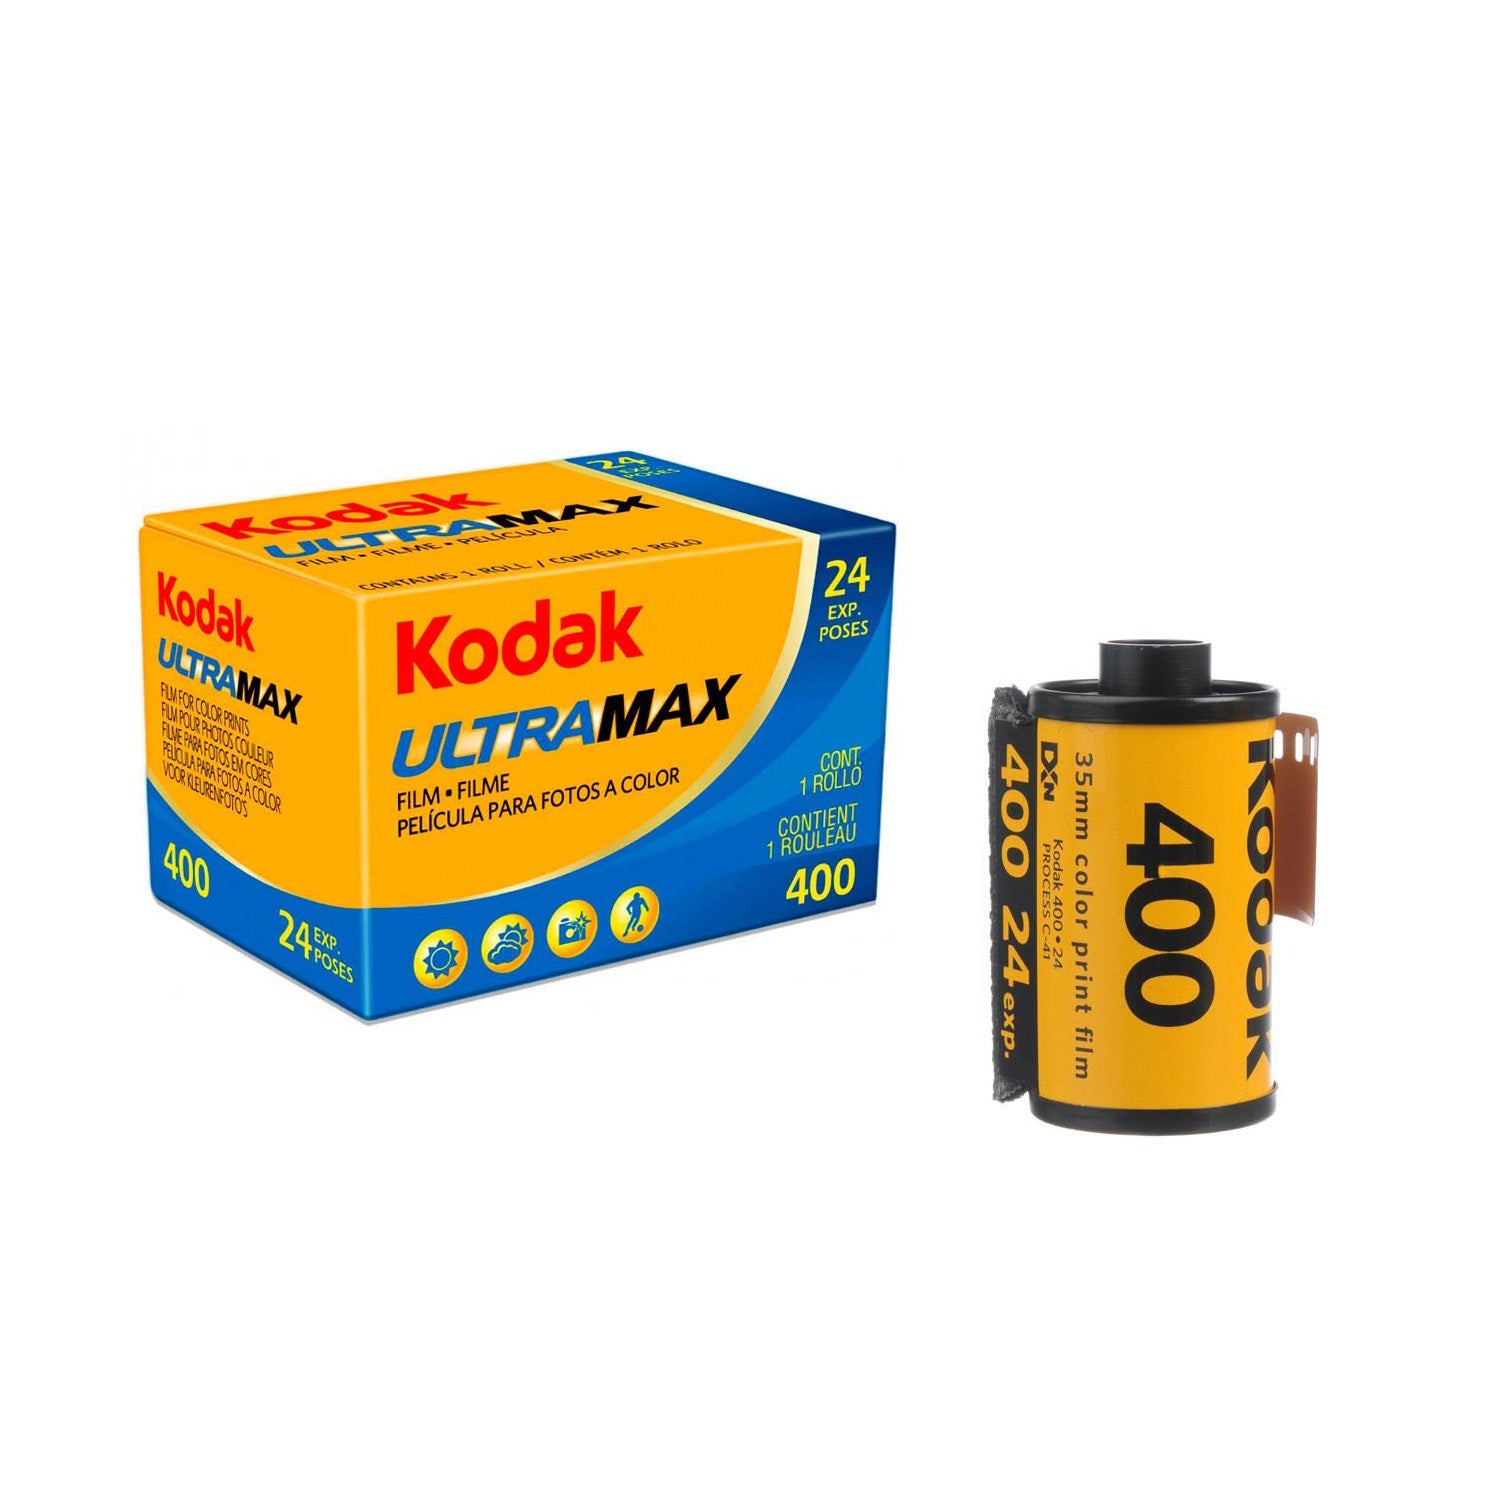 Kodak Ultramax 400 24 exposure color film